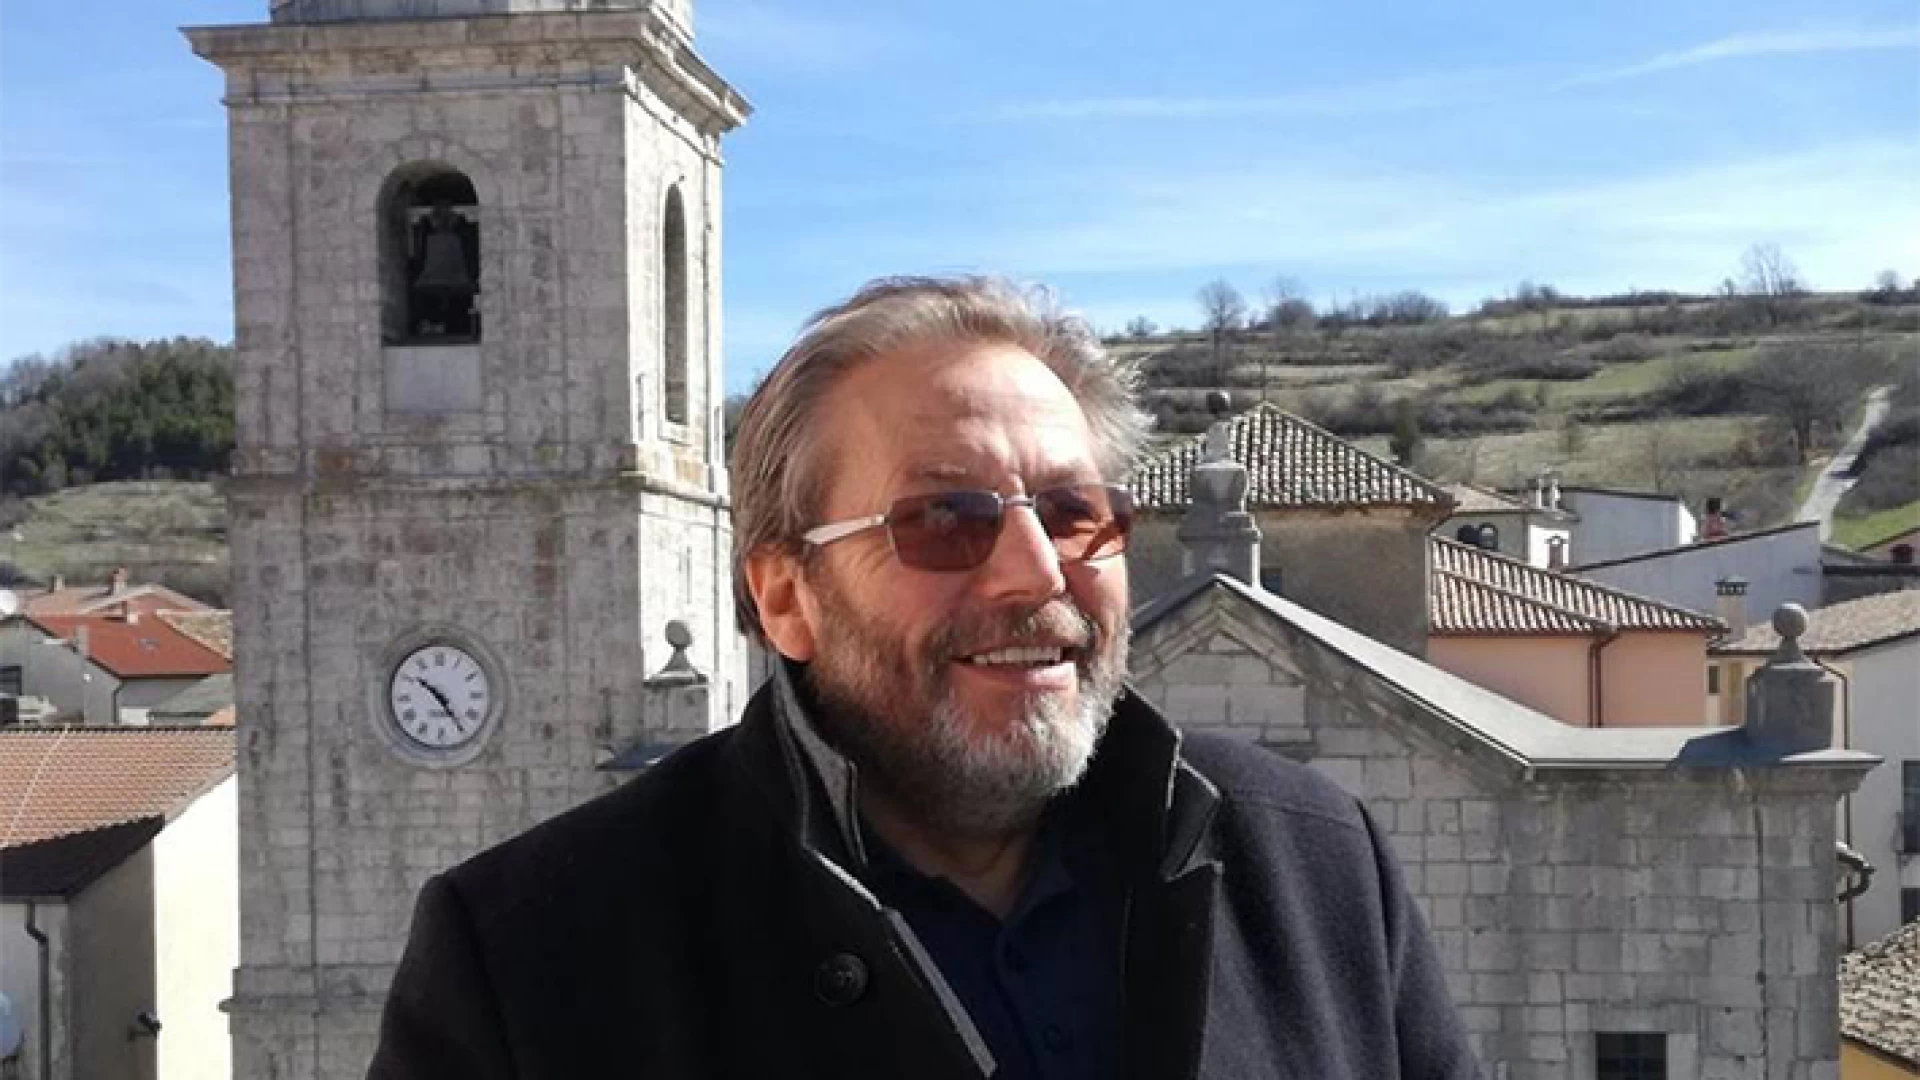 Rionero Sannitico: “Il mio impegno per il paese non è stato sufficiente”. Così il sindaco uscente Tonino Minichiello. “Avviate opere per oltre 10milioni di euro”.